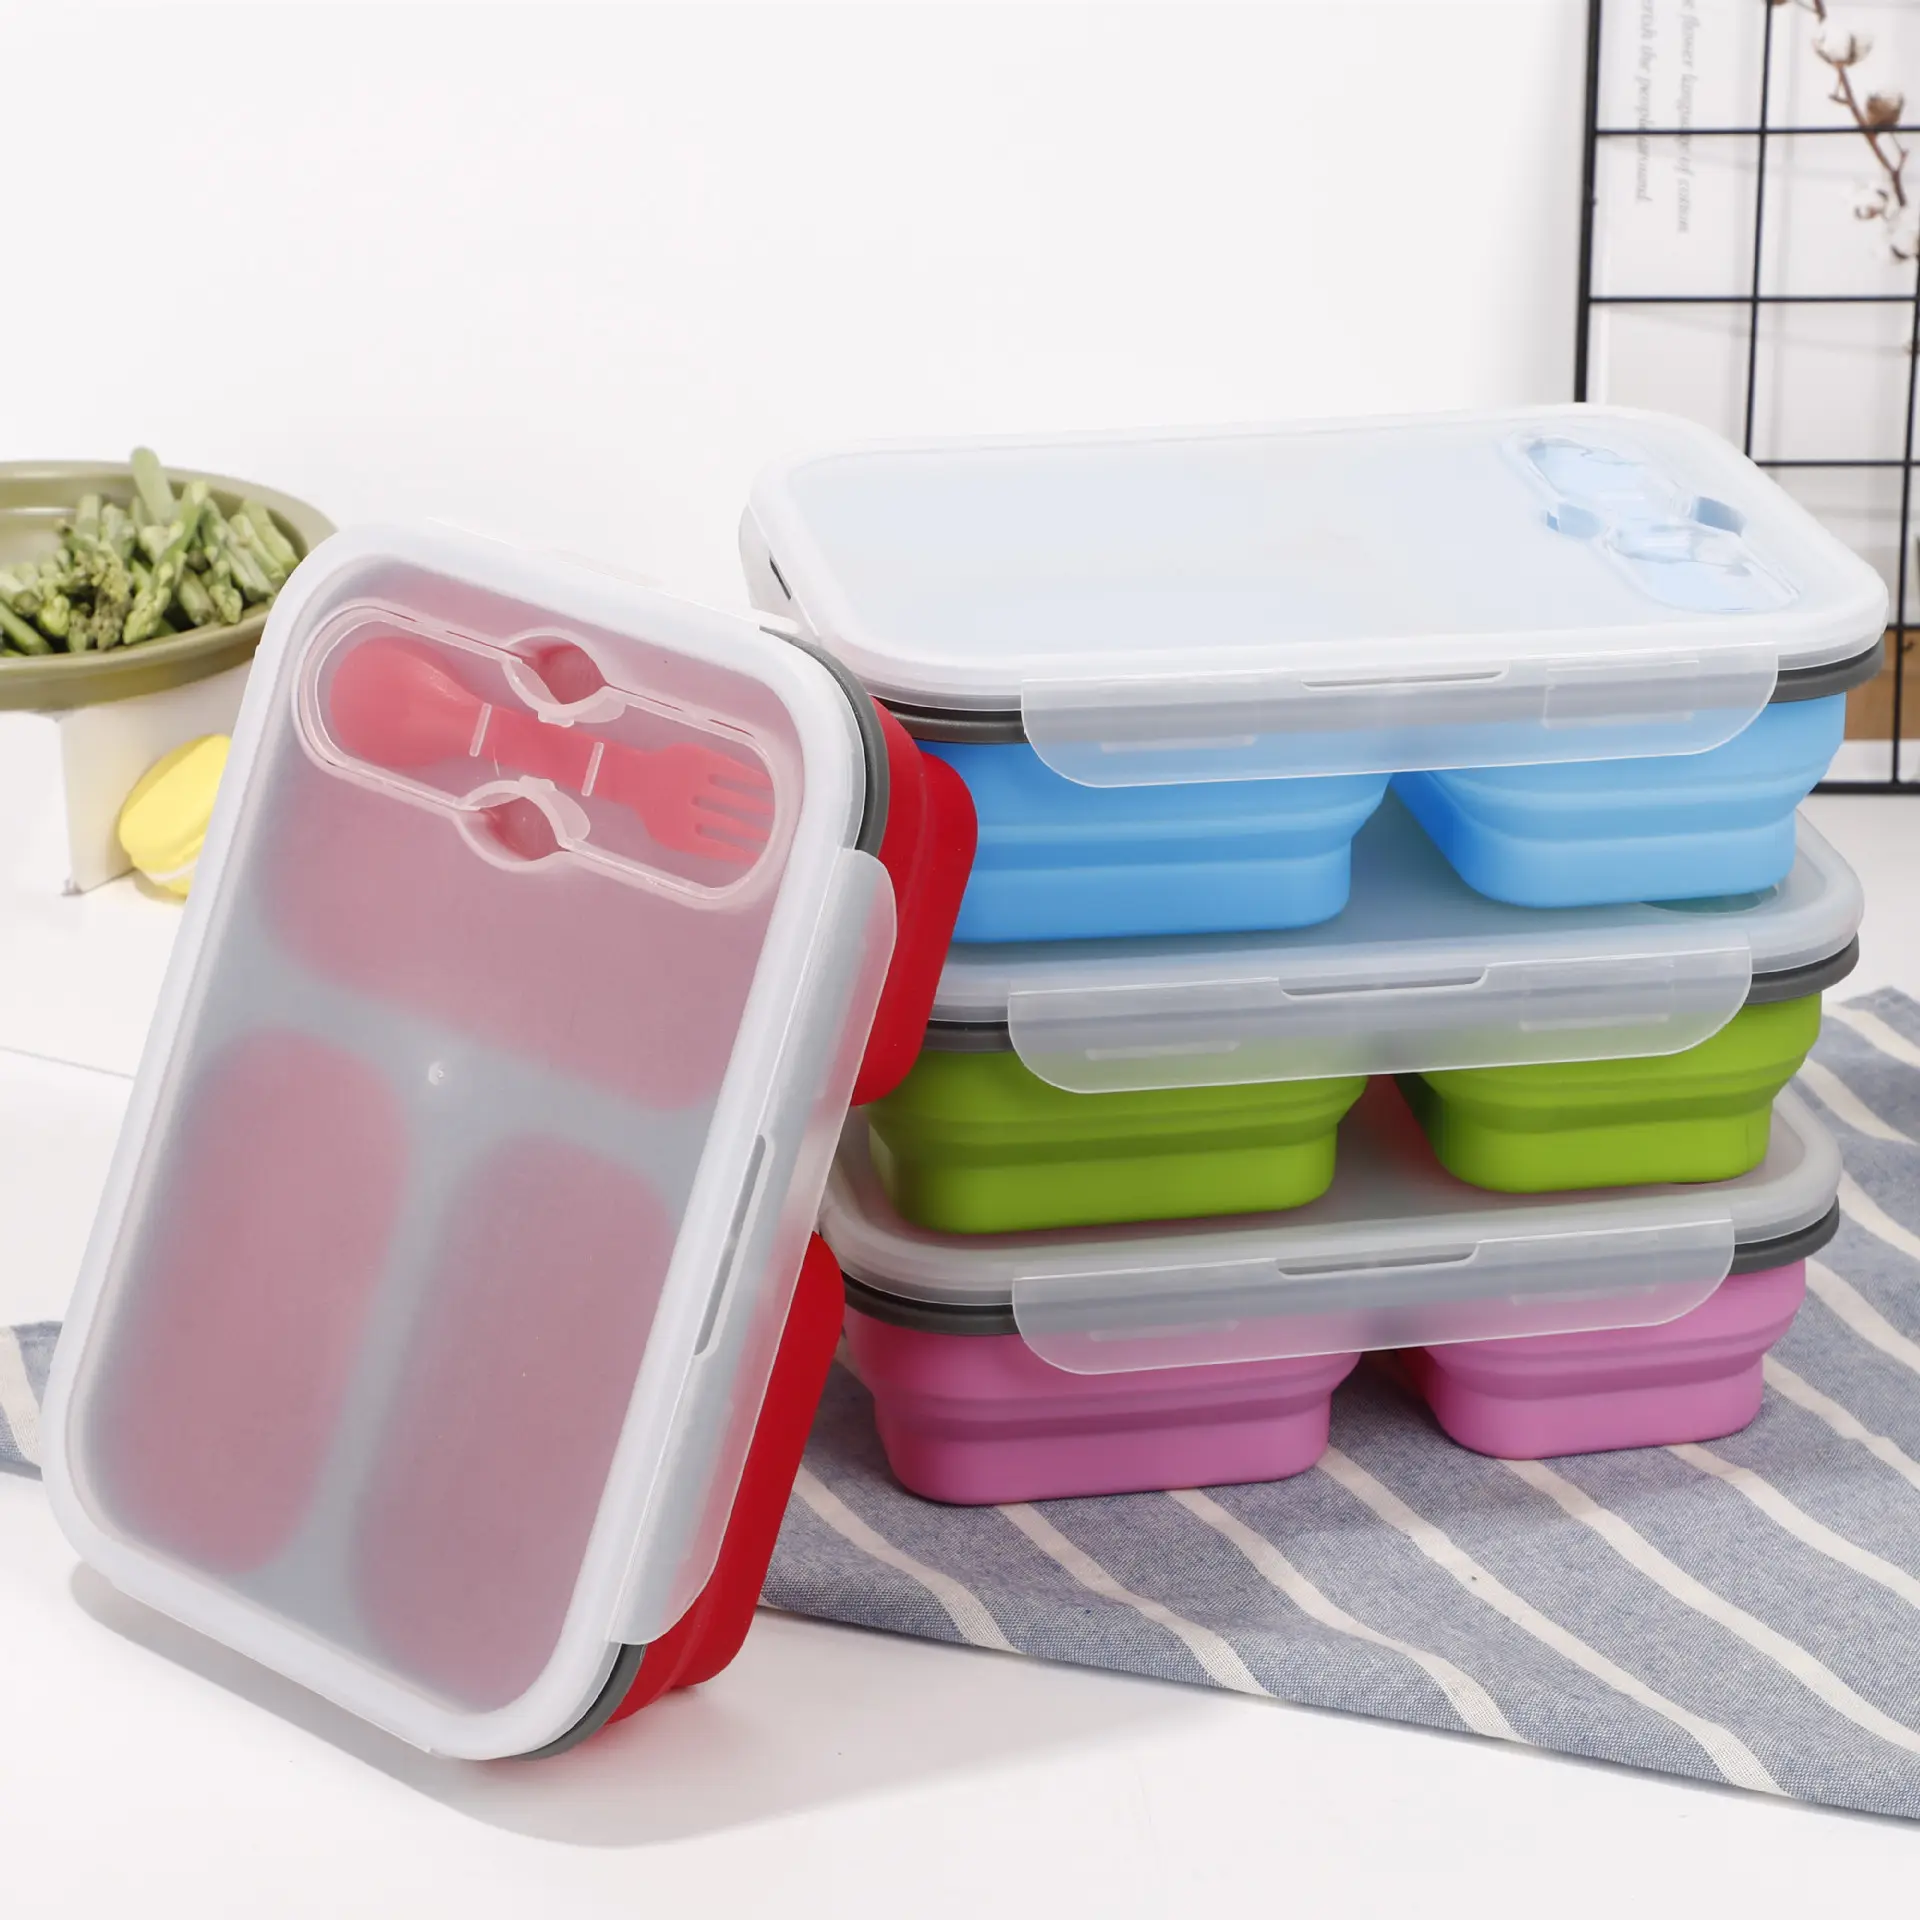 Kotak makan silikon lipat 3 kompartemen, set kotak makan siang anak-anak, wadah penyimpanan makanan bayi yang dapat dilipat dengan tutup